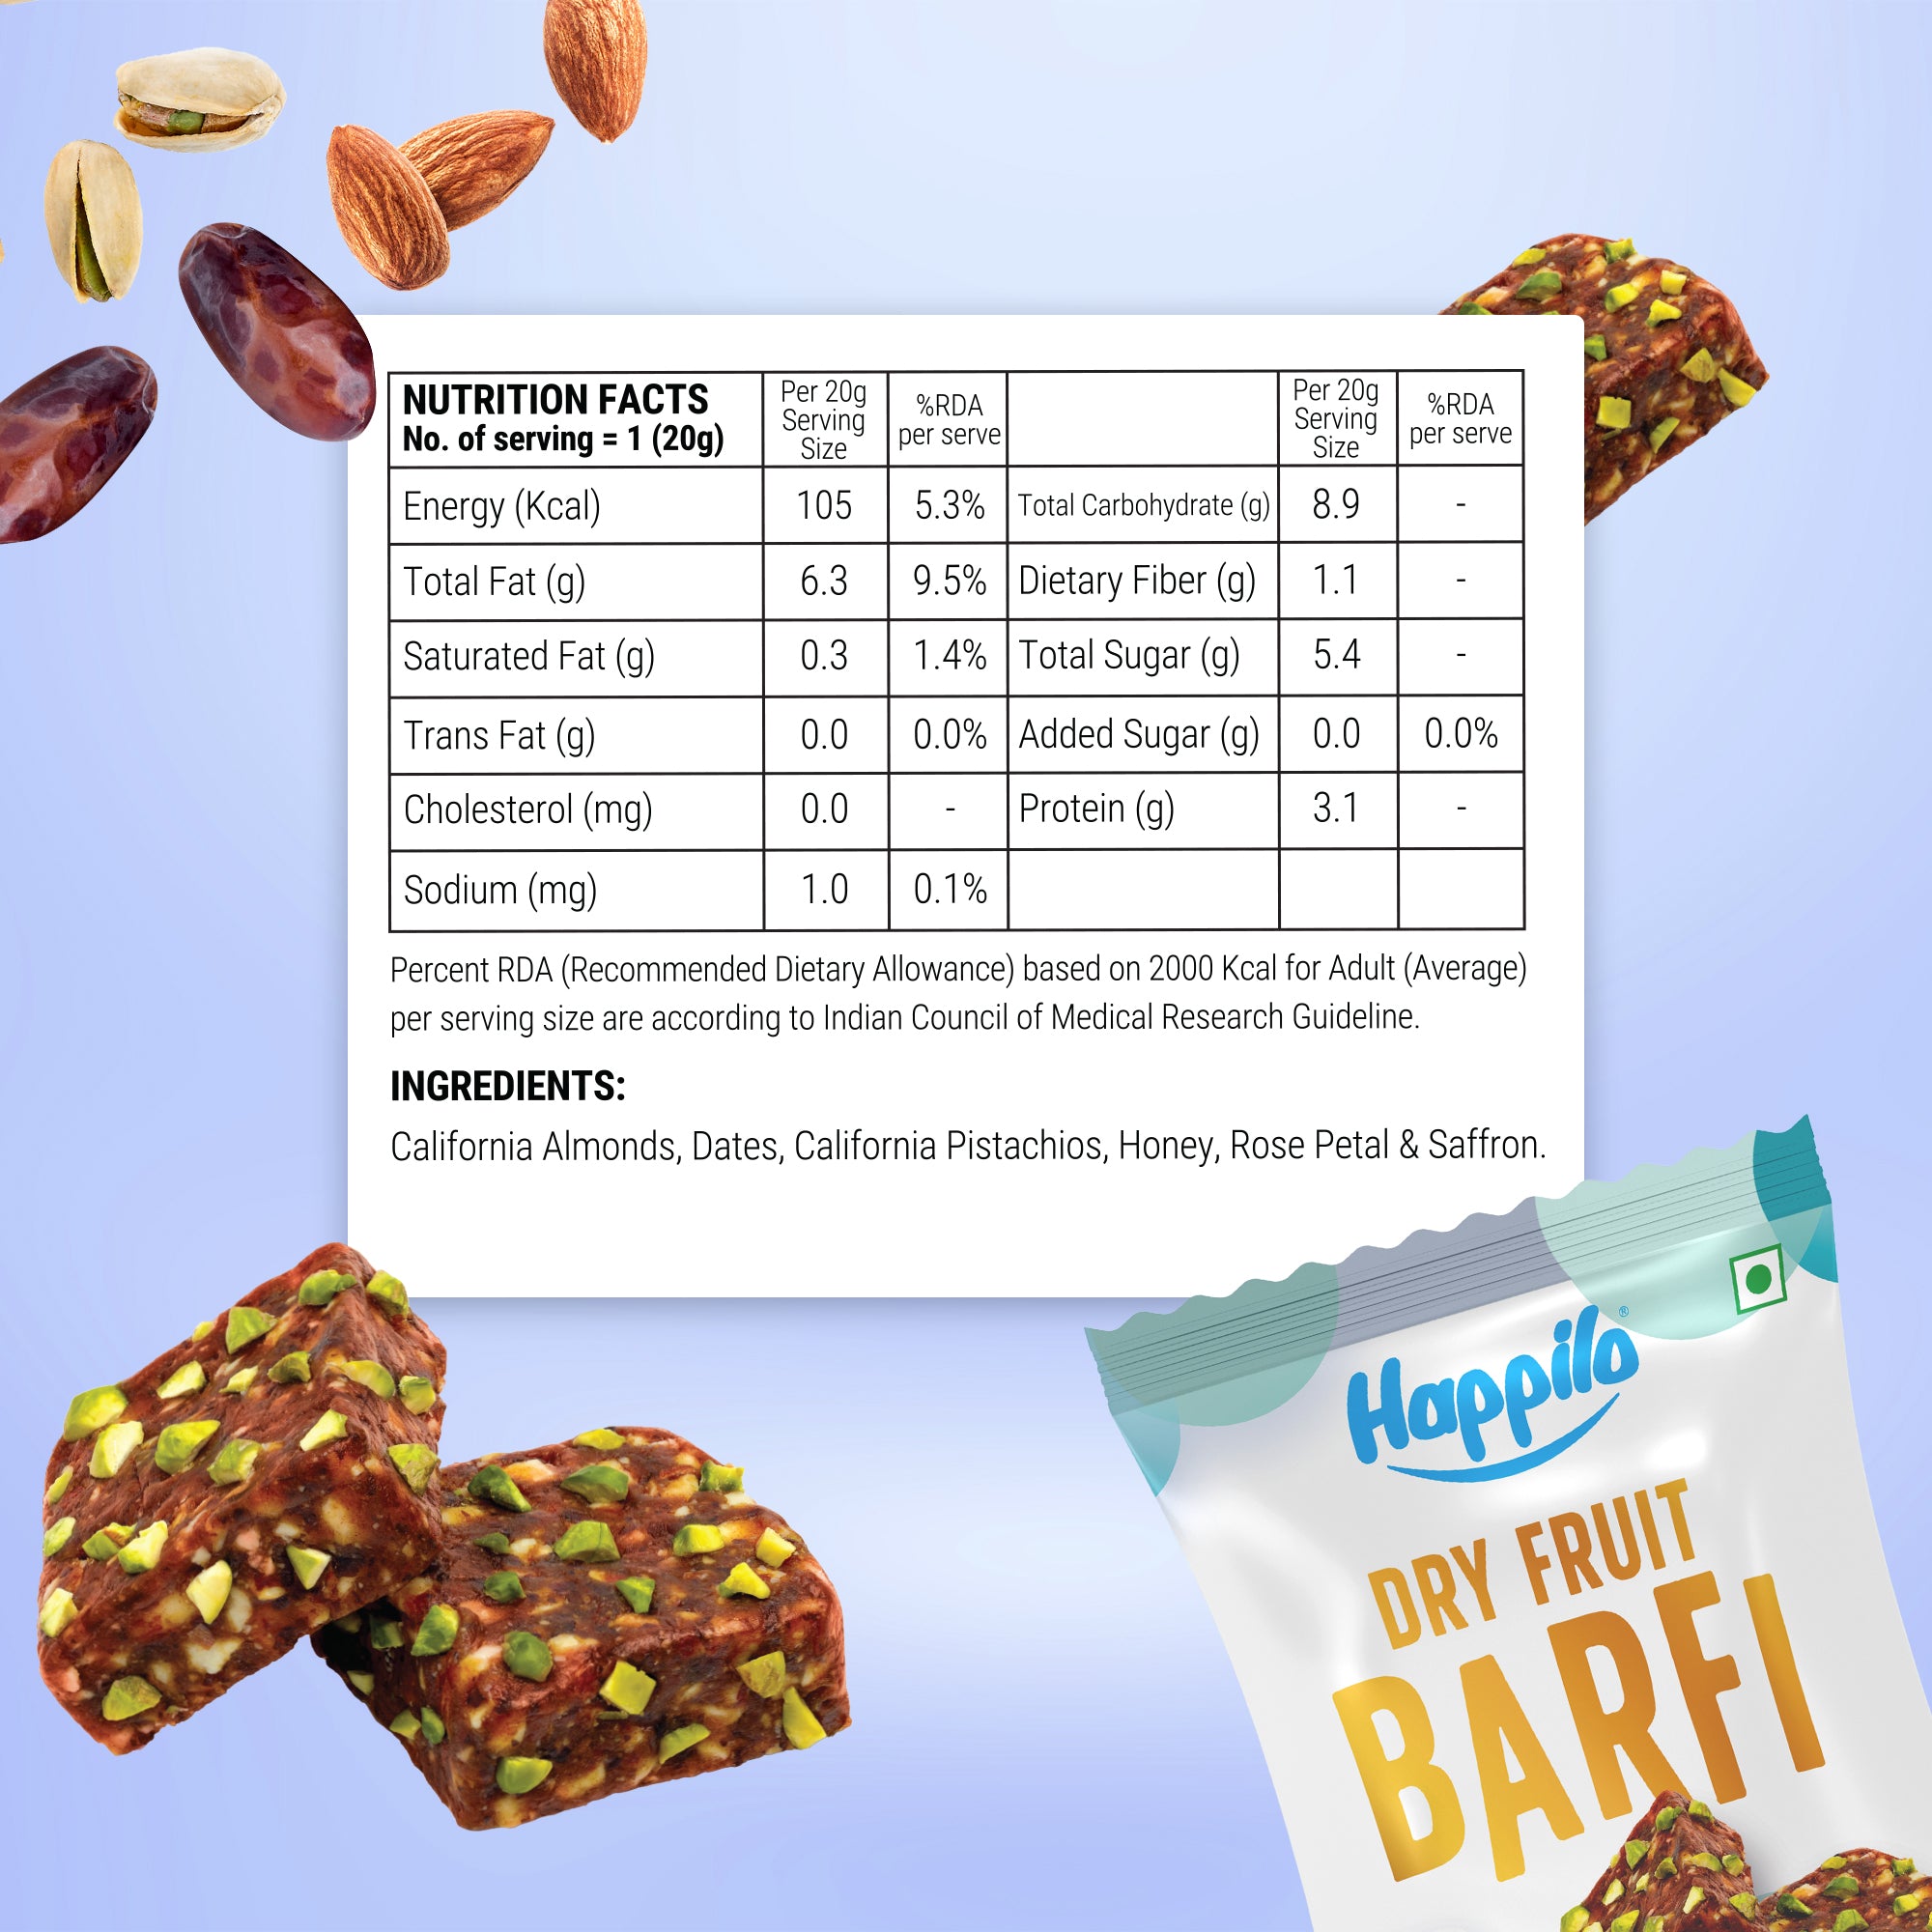 Happilo Premium Dry Fruit BarFi Gift Box 240g (20gX12)